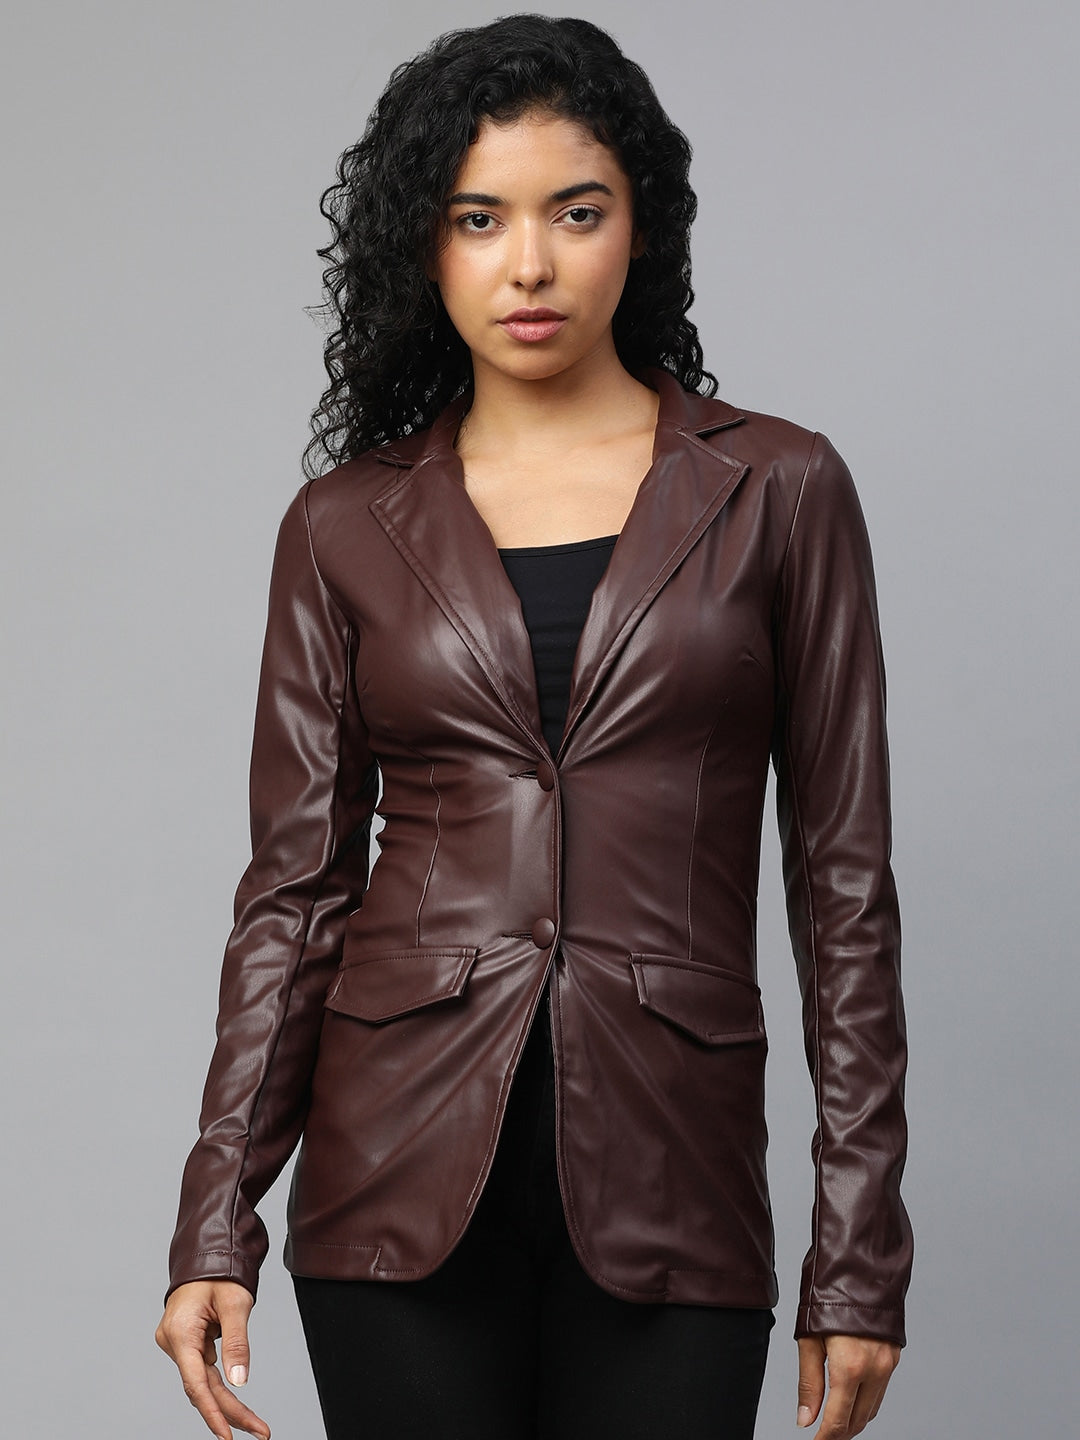 Genuine Leather Oversized Blazer | QAWACH